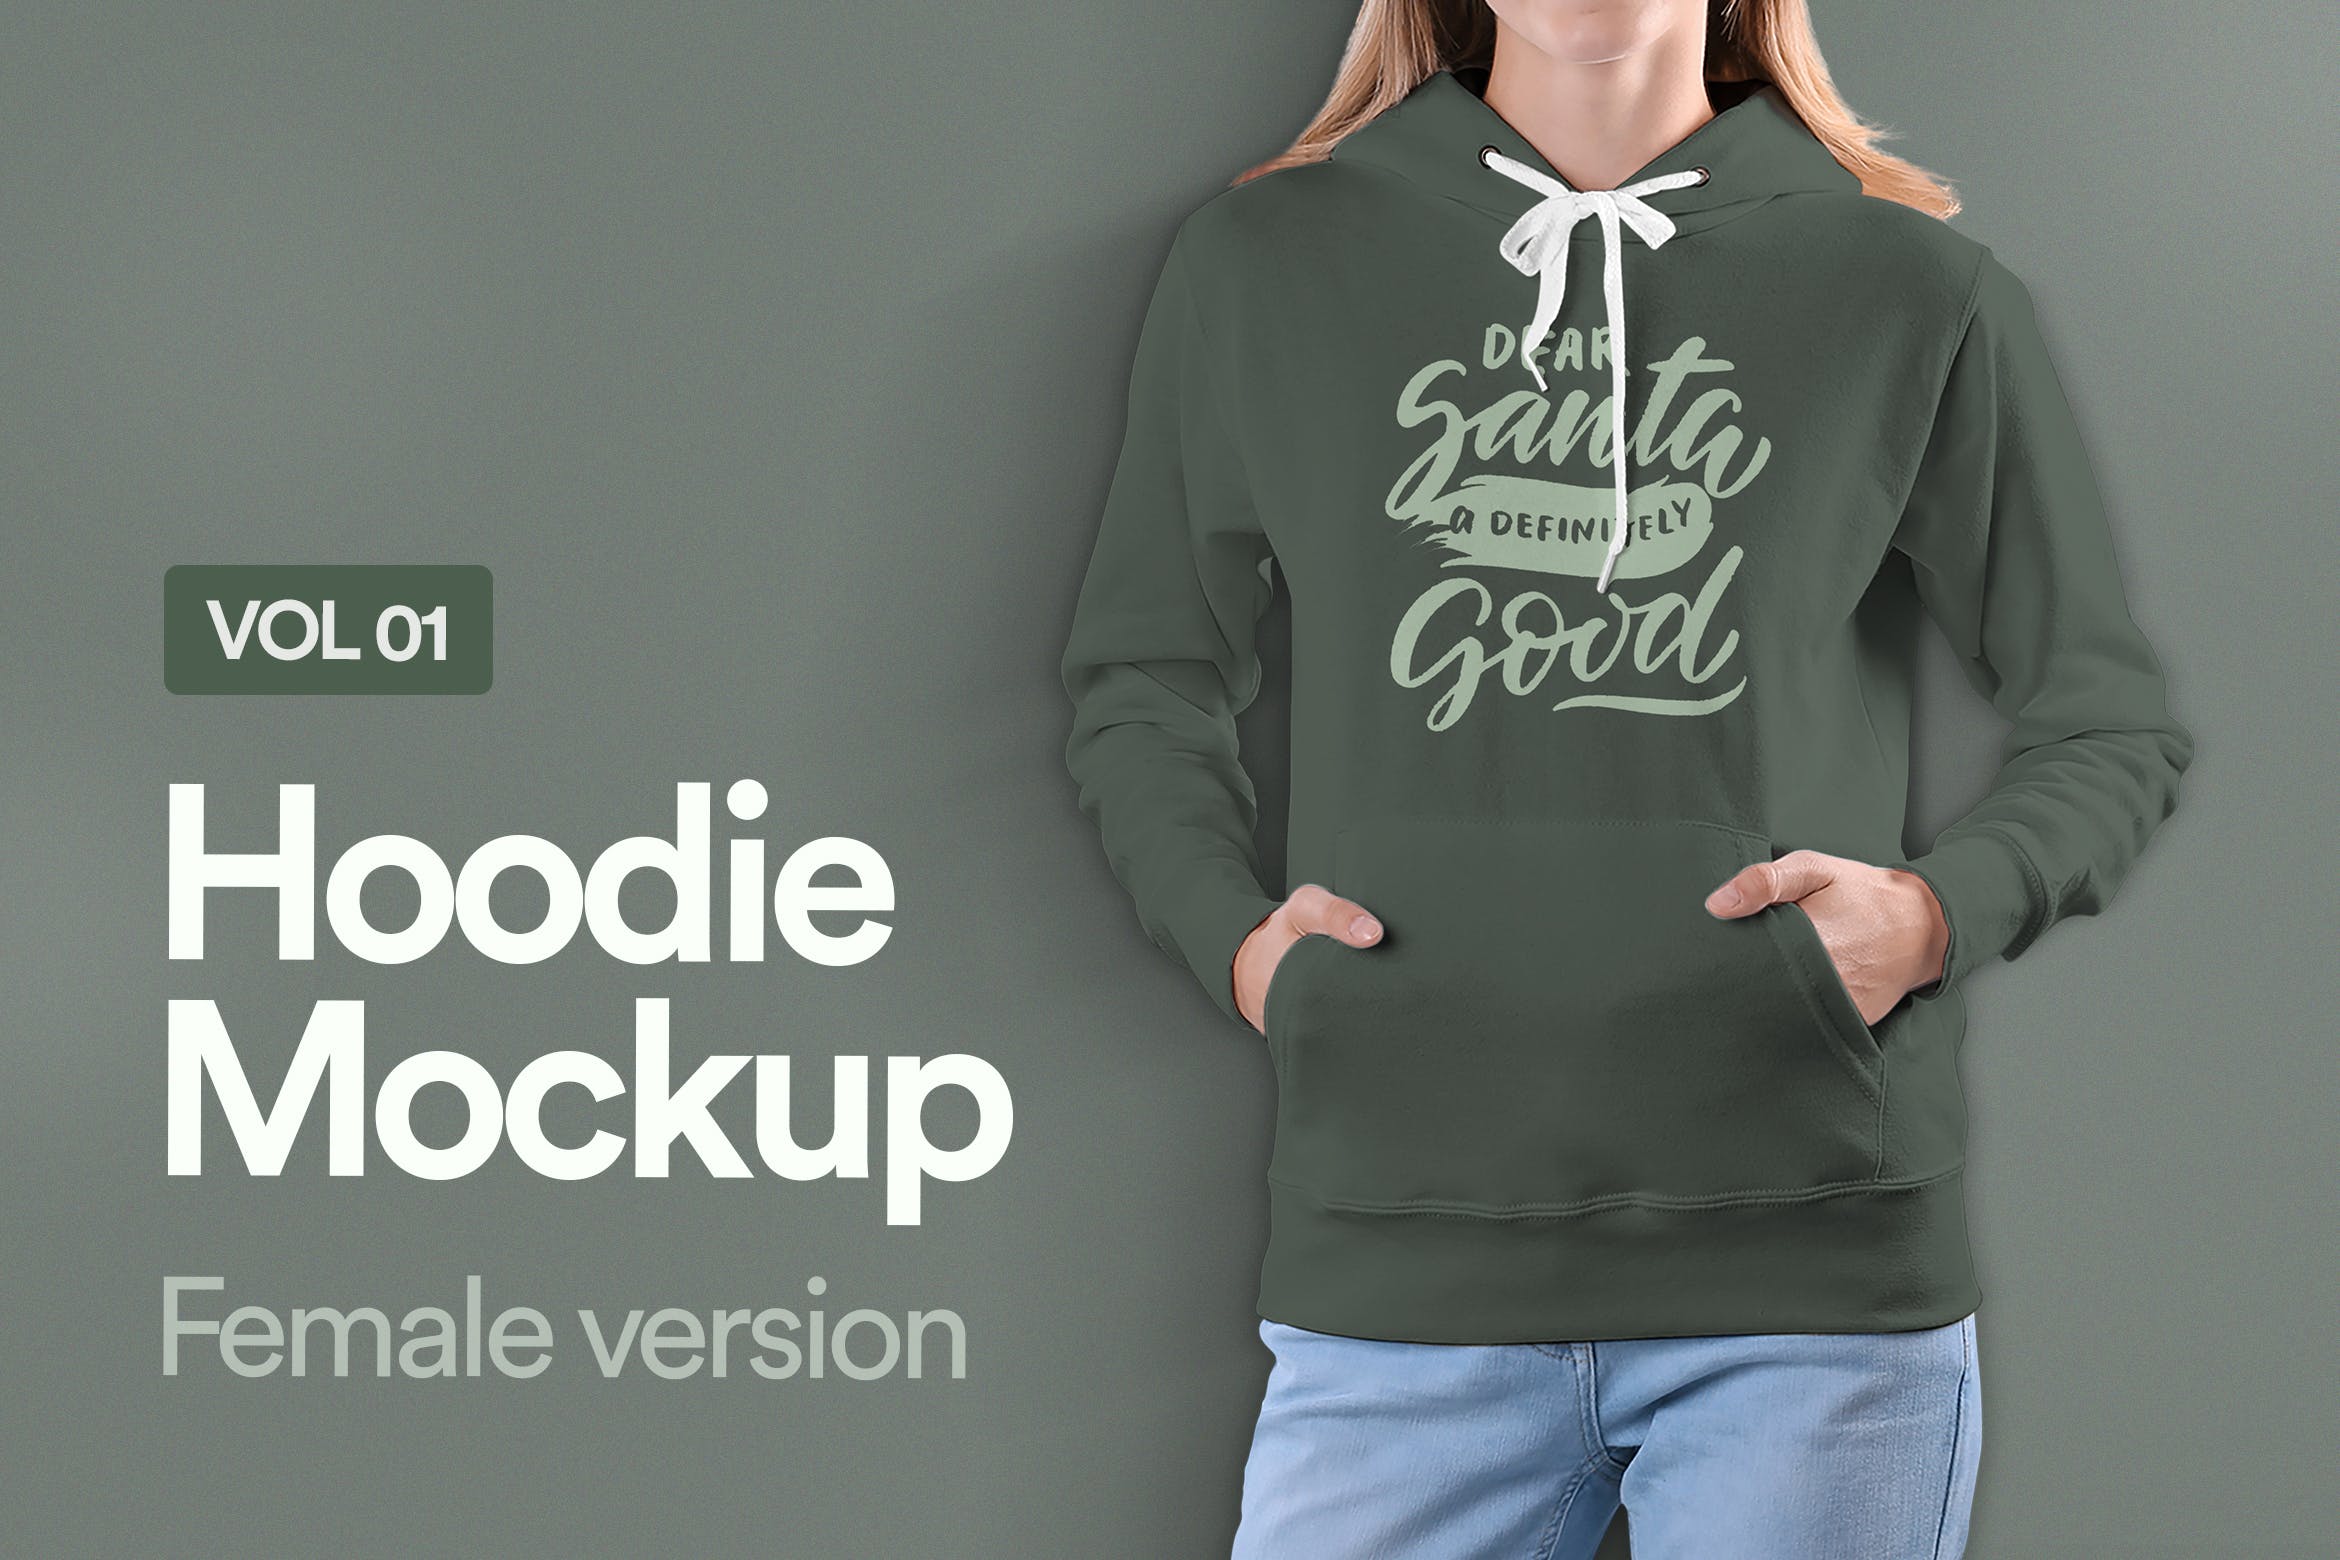 女士连帽卫衣设计预览样机素材库精选v01 Hoodie Mockup Vol 01插图